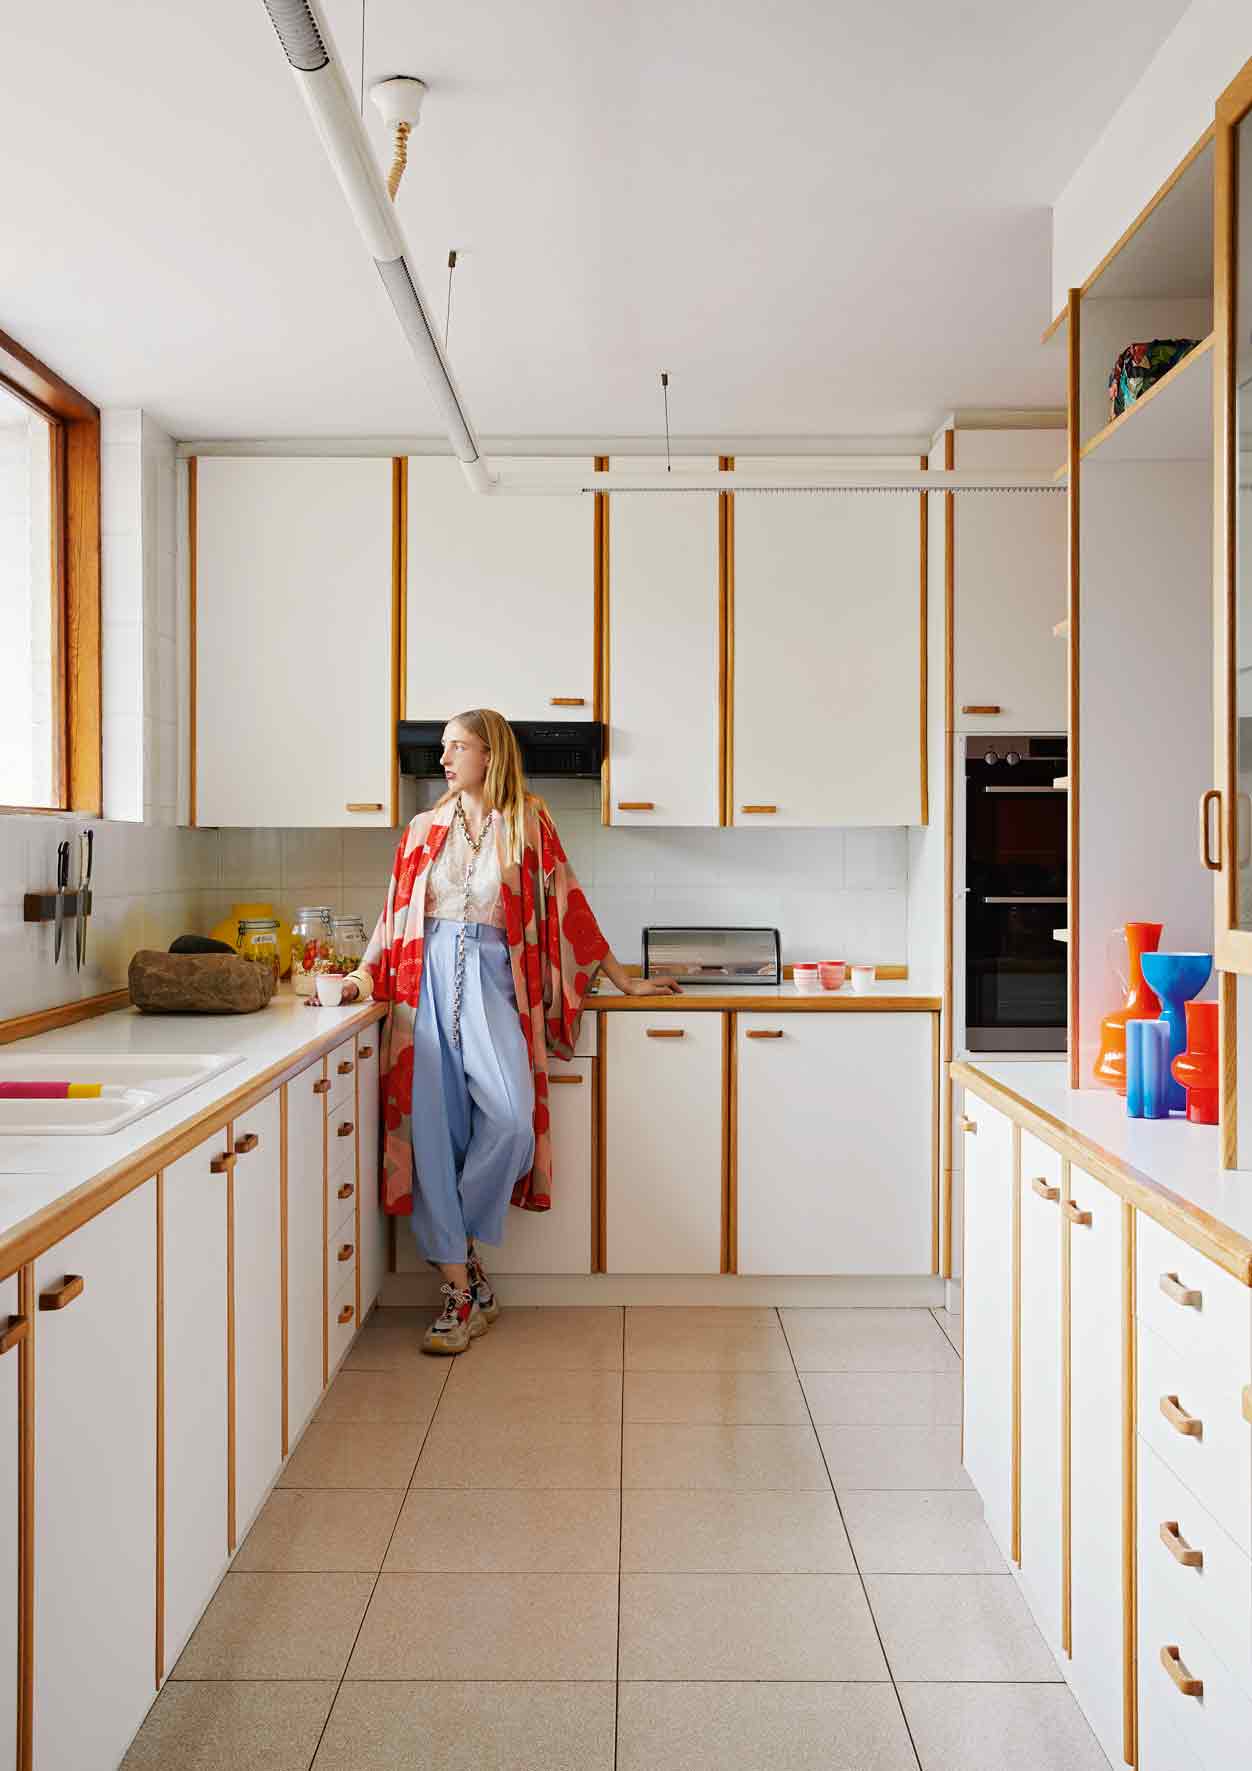 Лезанн Вивье у себя на кухне. Фото Эльза Янг. Стилист Свен Альбердинг.